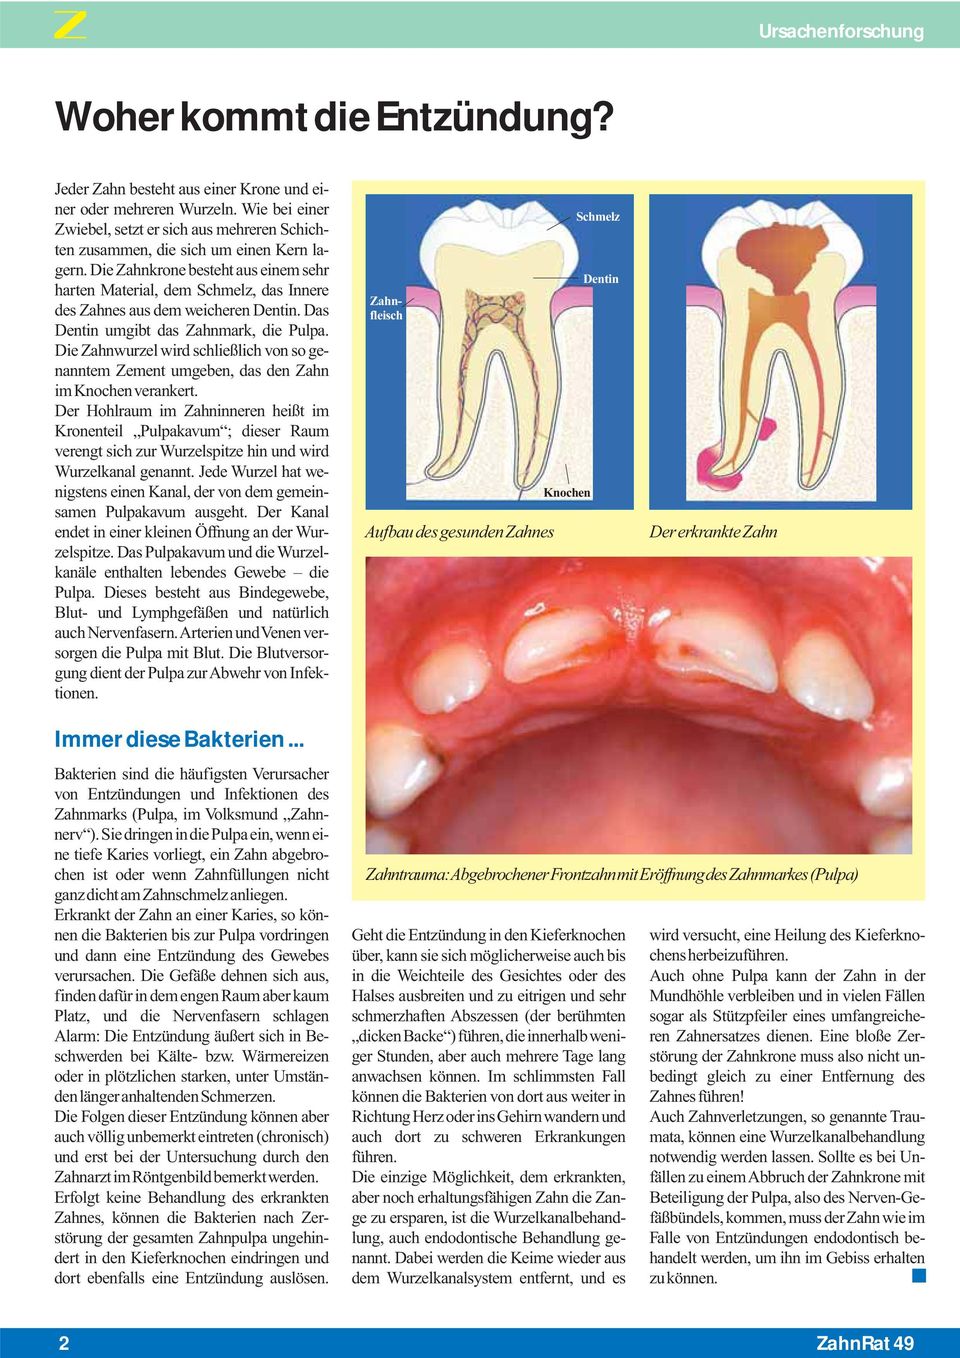 Die Zahnkrone besteht aus einem sehr harten Material, dem Schmelz, das Innere des Zahnes aus dem weicheren Dentin. Das Dentin umgibt das Zahnmark, die Pulpa.